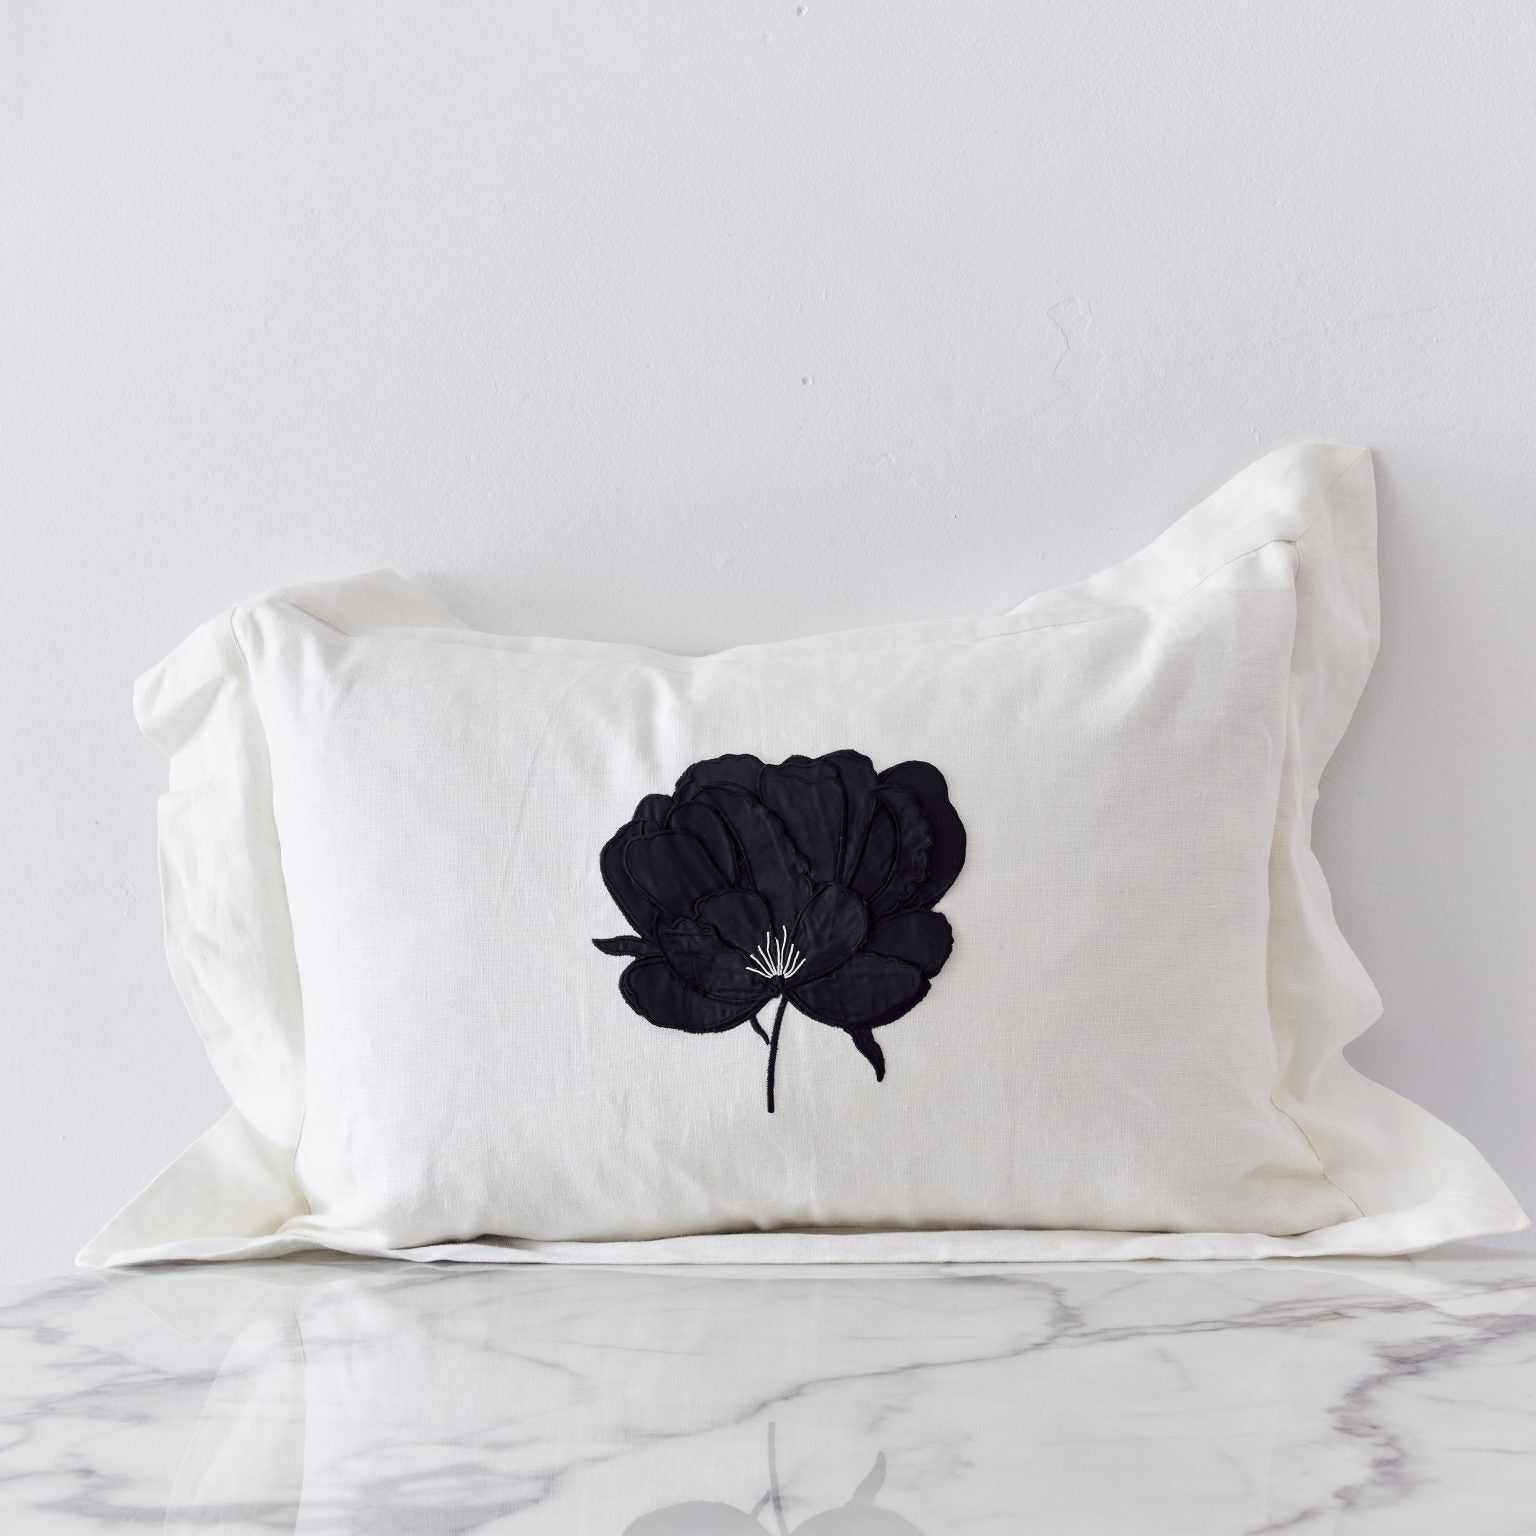 Ifuru Black Raw Silk Flower on White Linen with Flange